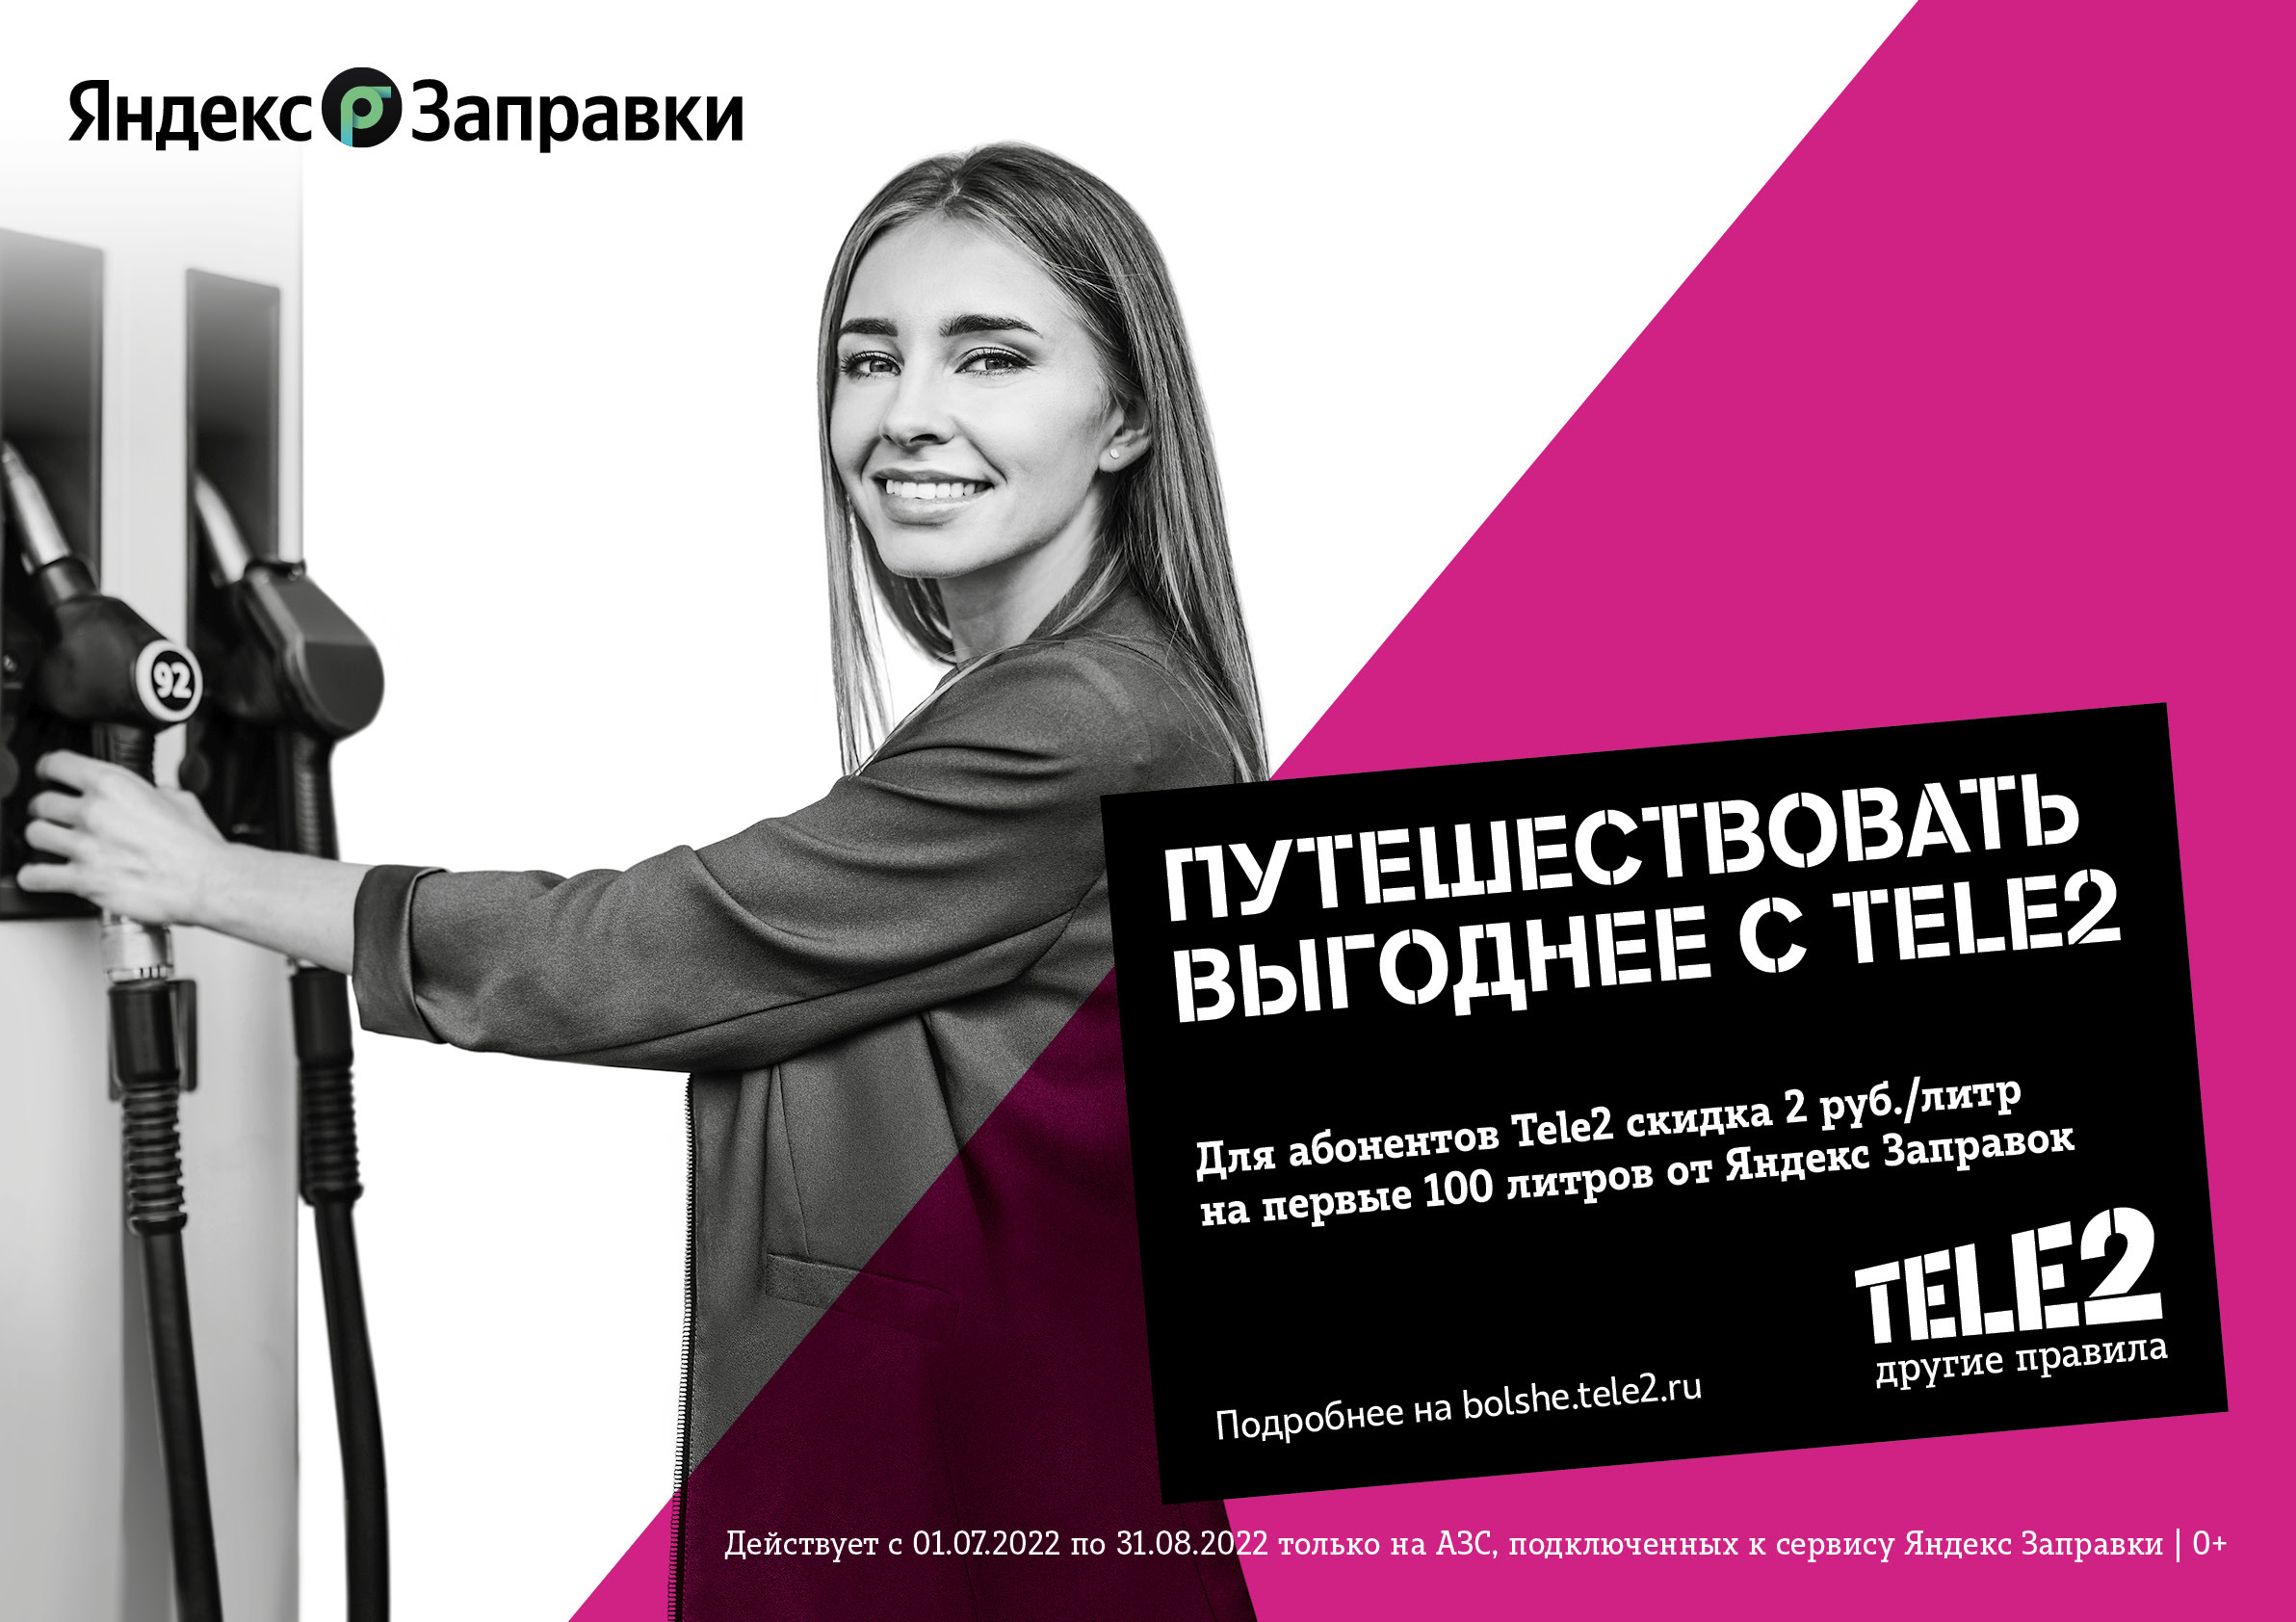 Клиенты Tele2 смогут покупать топливо со скидкой через Яндекс.Заправки